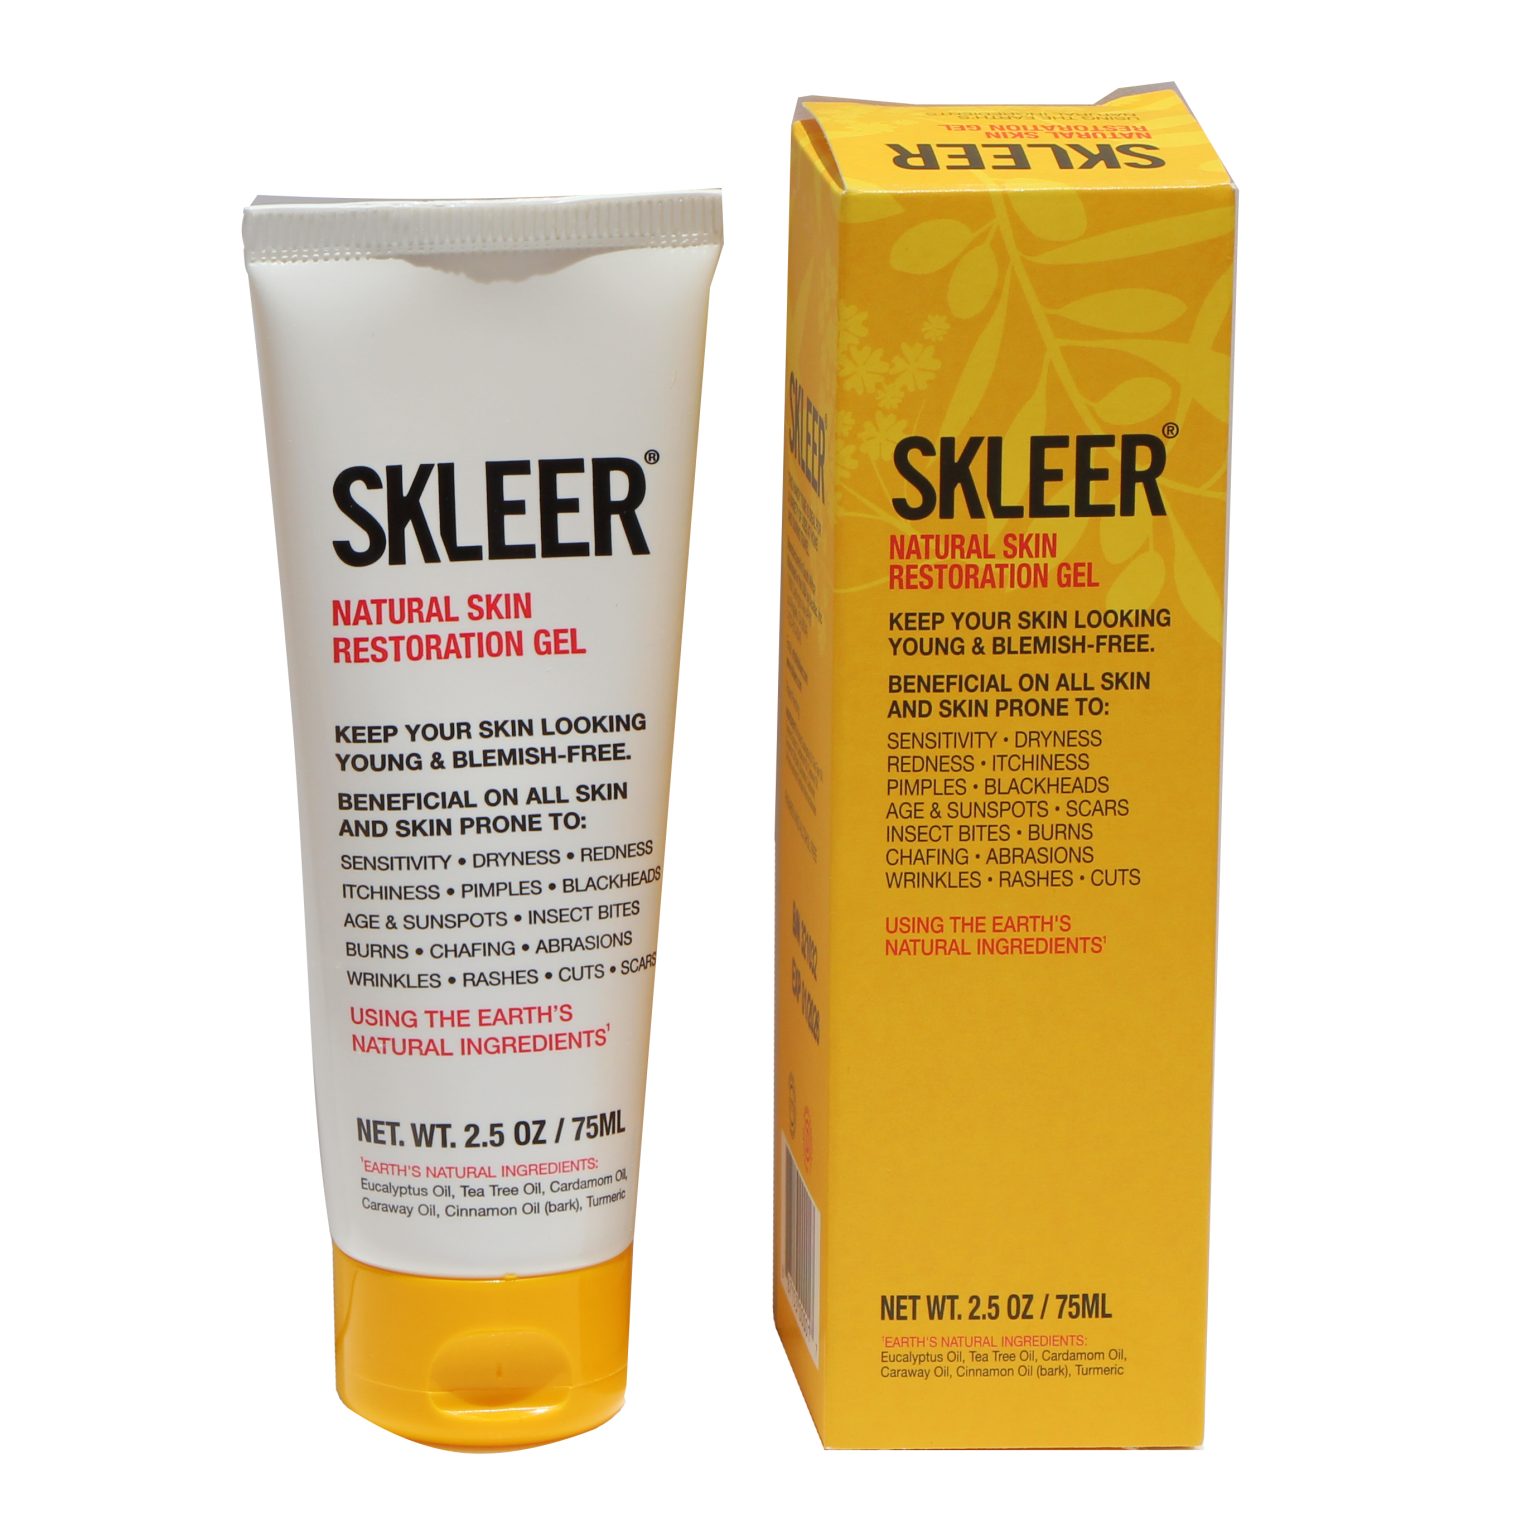 SKLEER Skin blemish remover - SKLEER